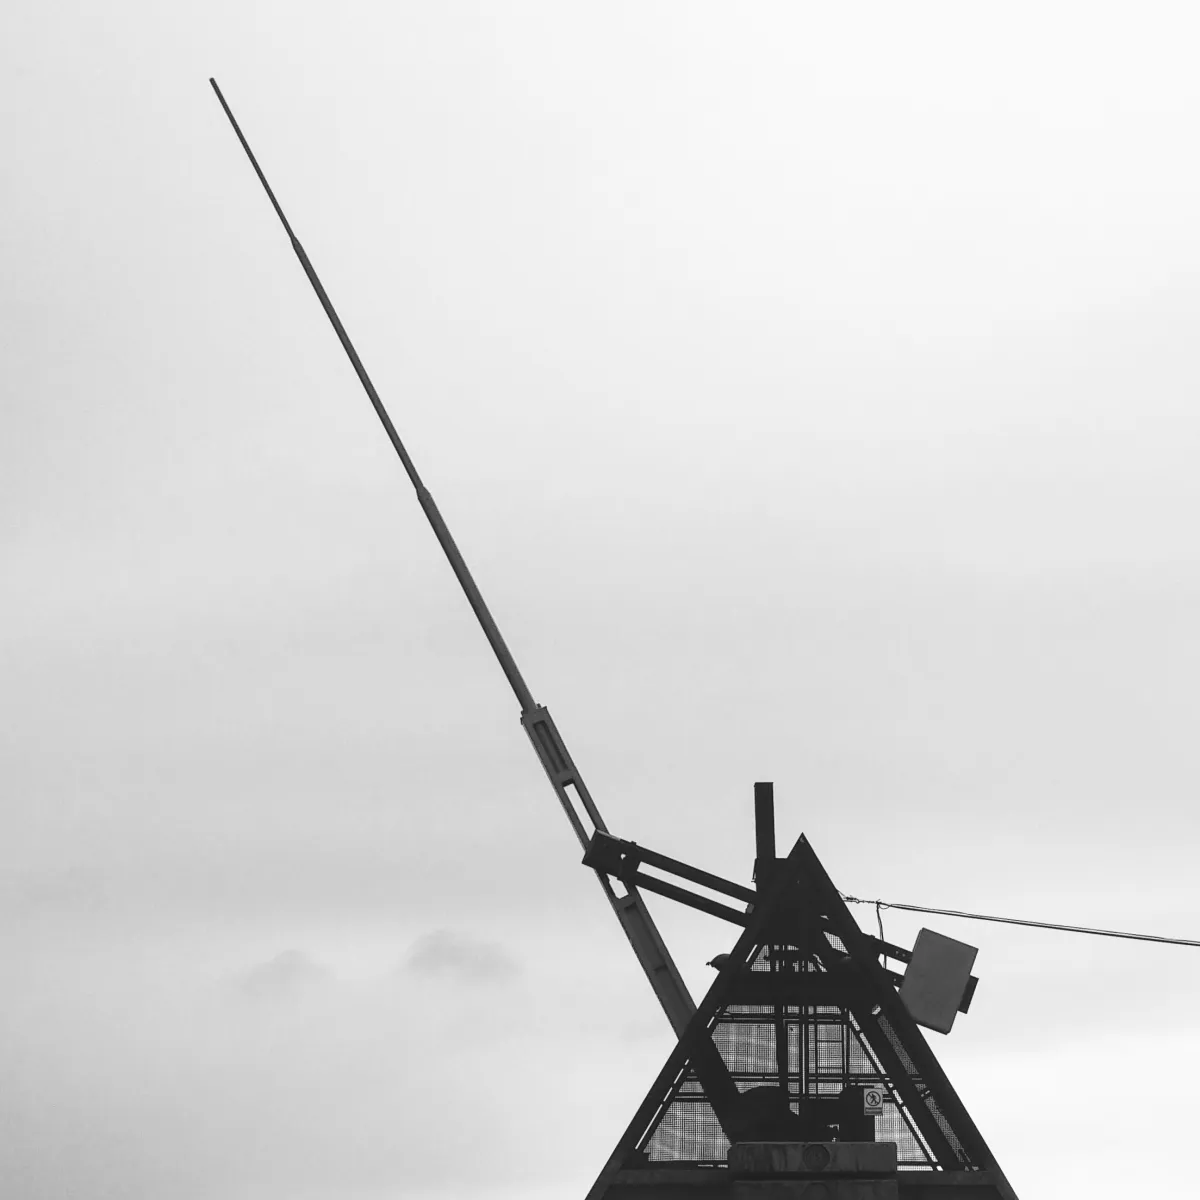 Photo noir et blanc du métronome de Prague, une structure métallique aux allures d'un métronome comportant une énorme aiguille mécanisée battant un lent tempo.